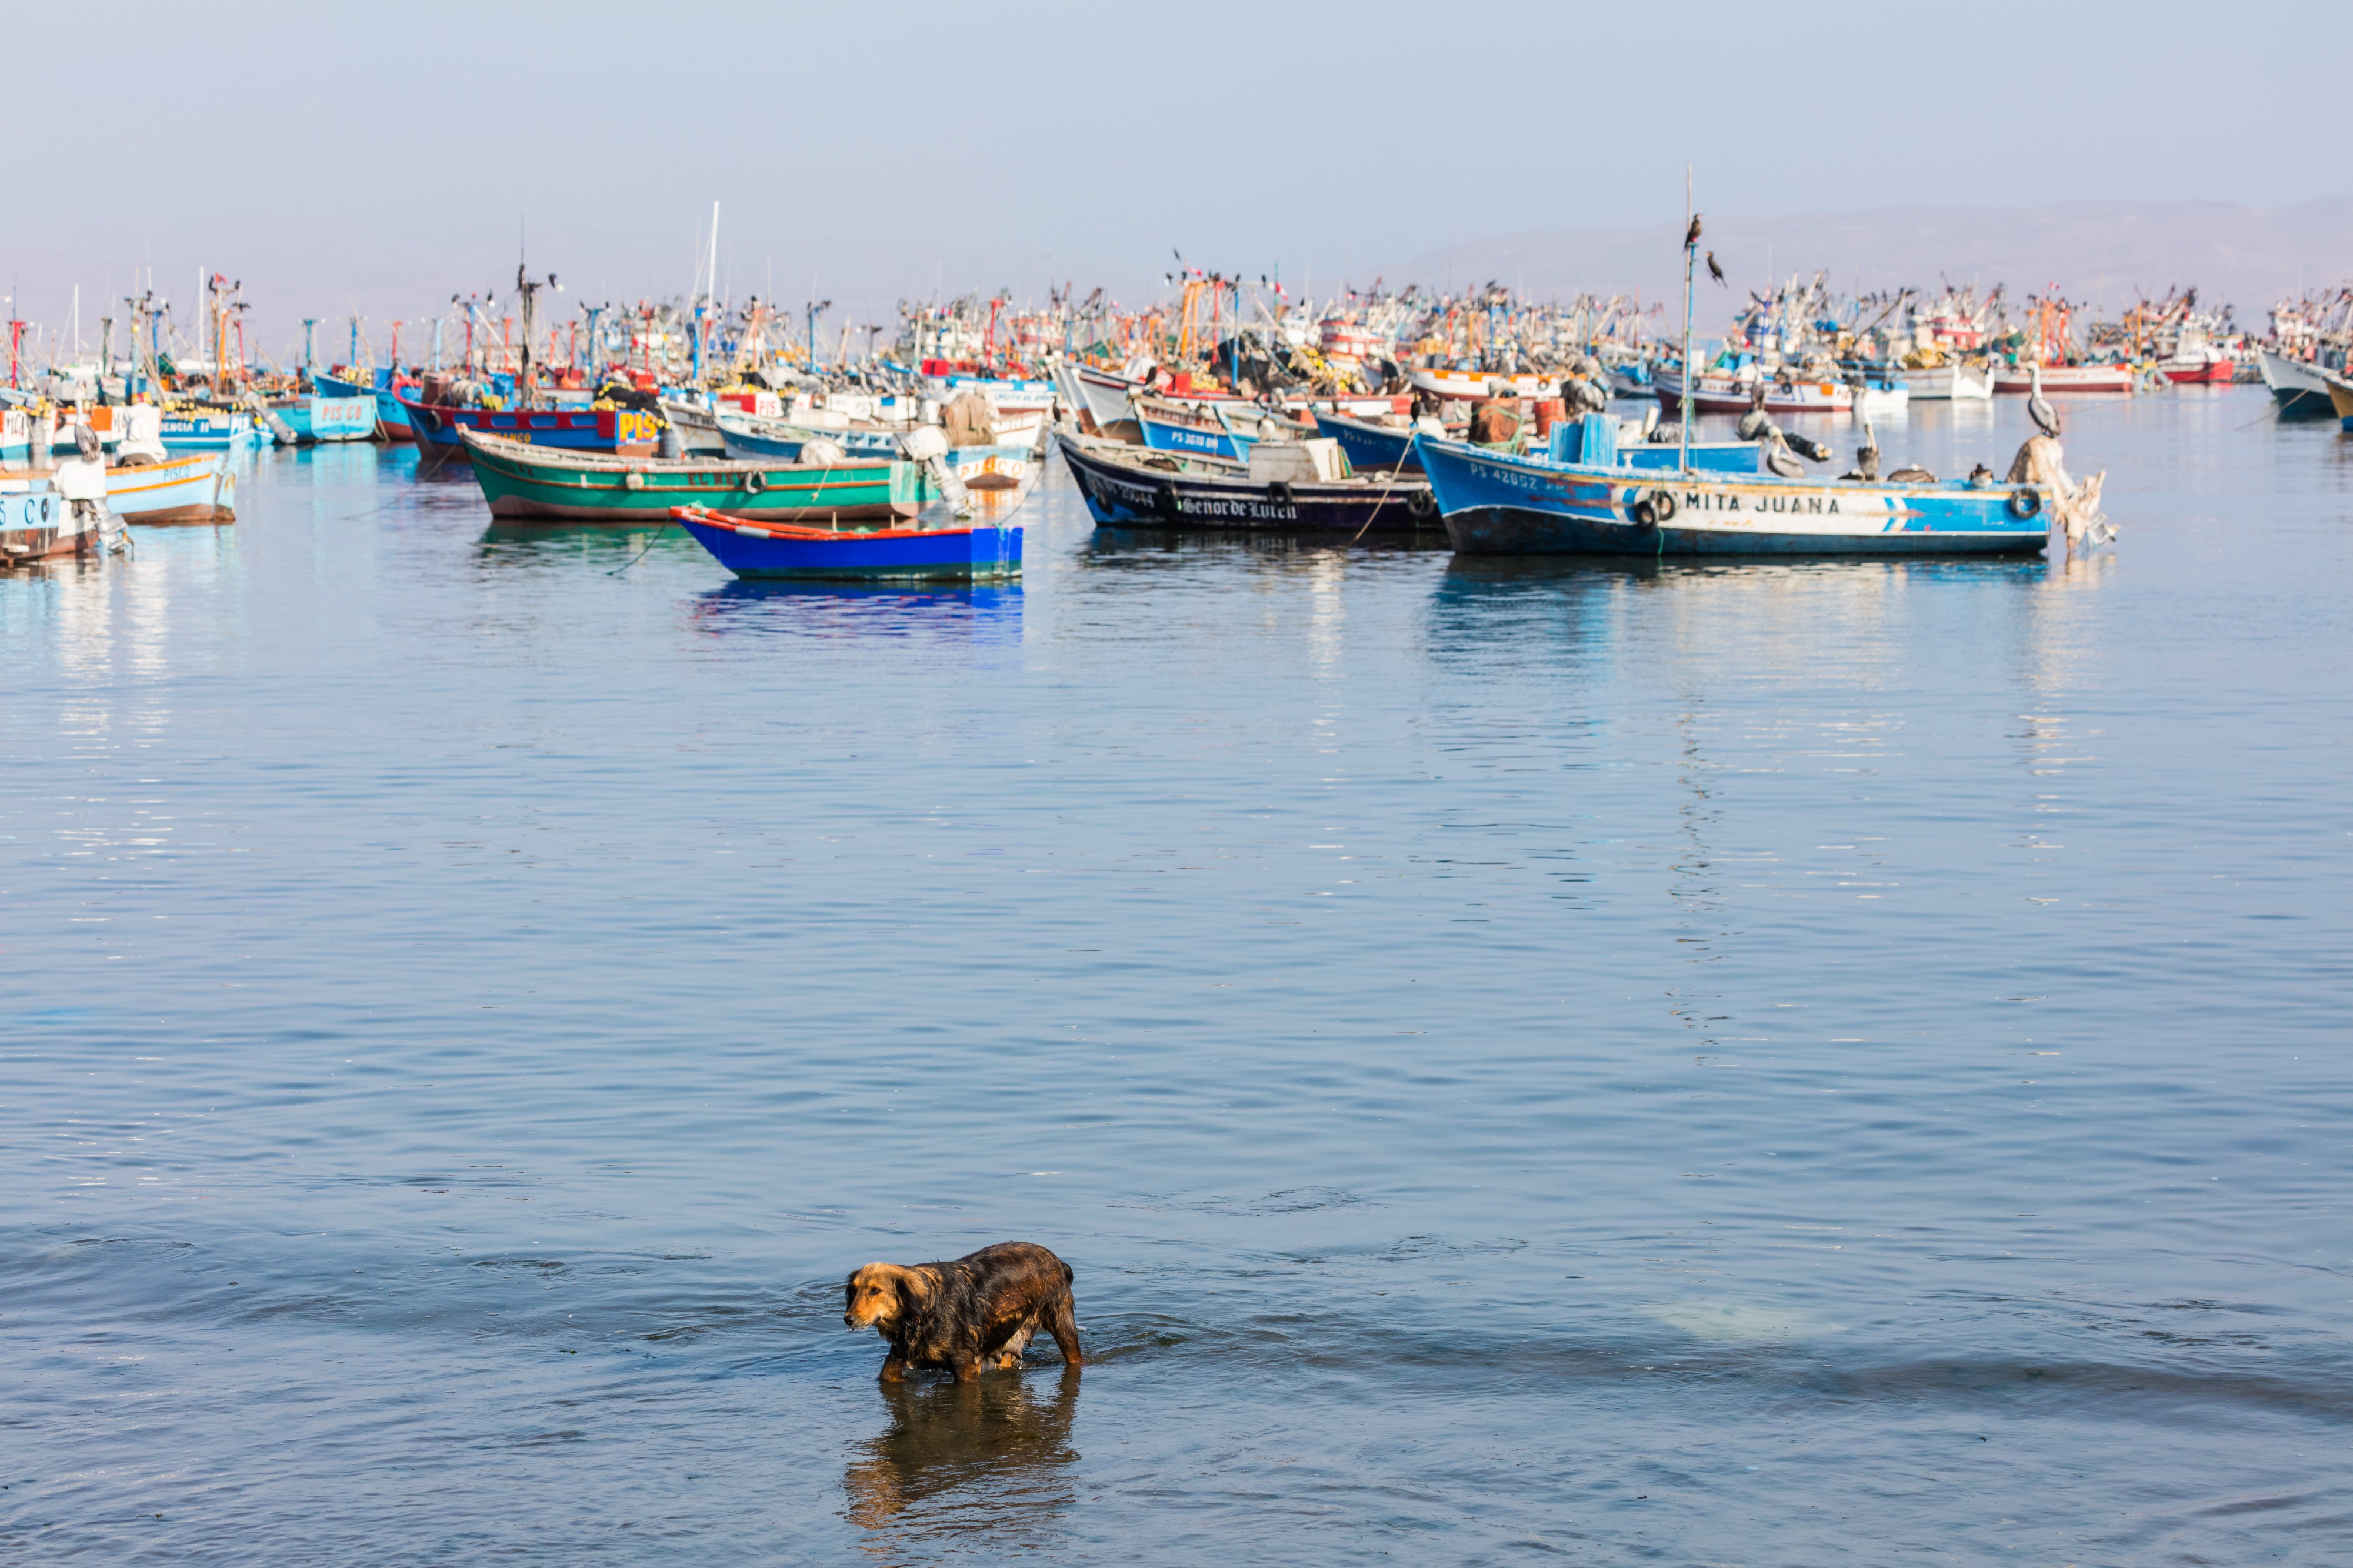 Perro bañándose en el puerto de Paracas, Perú, 2015-07-29, DD 13